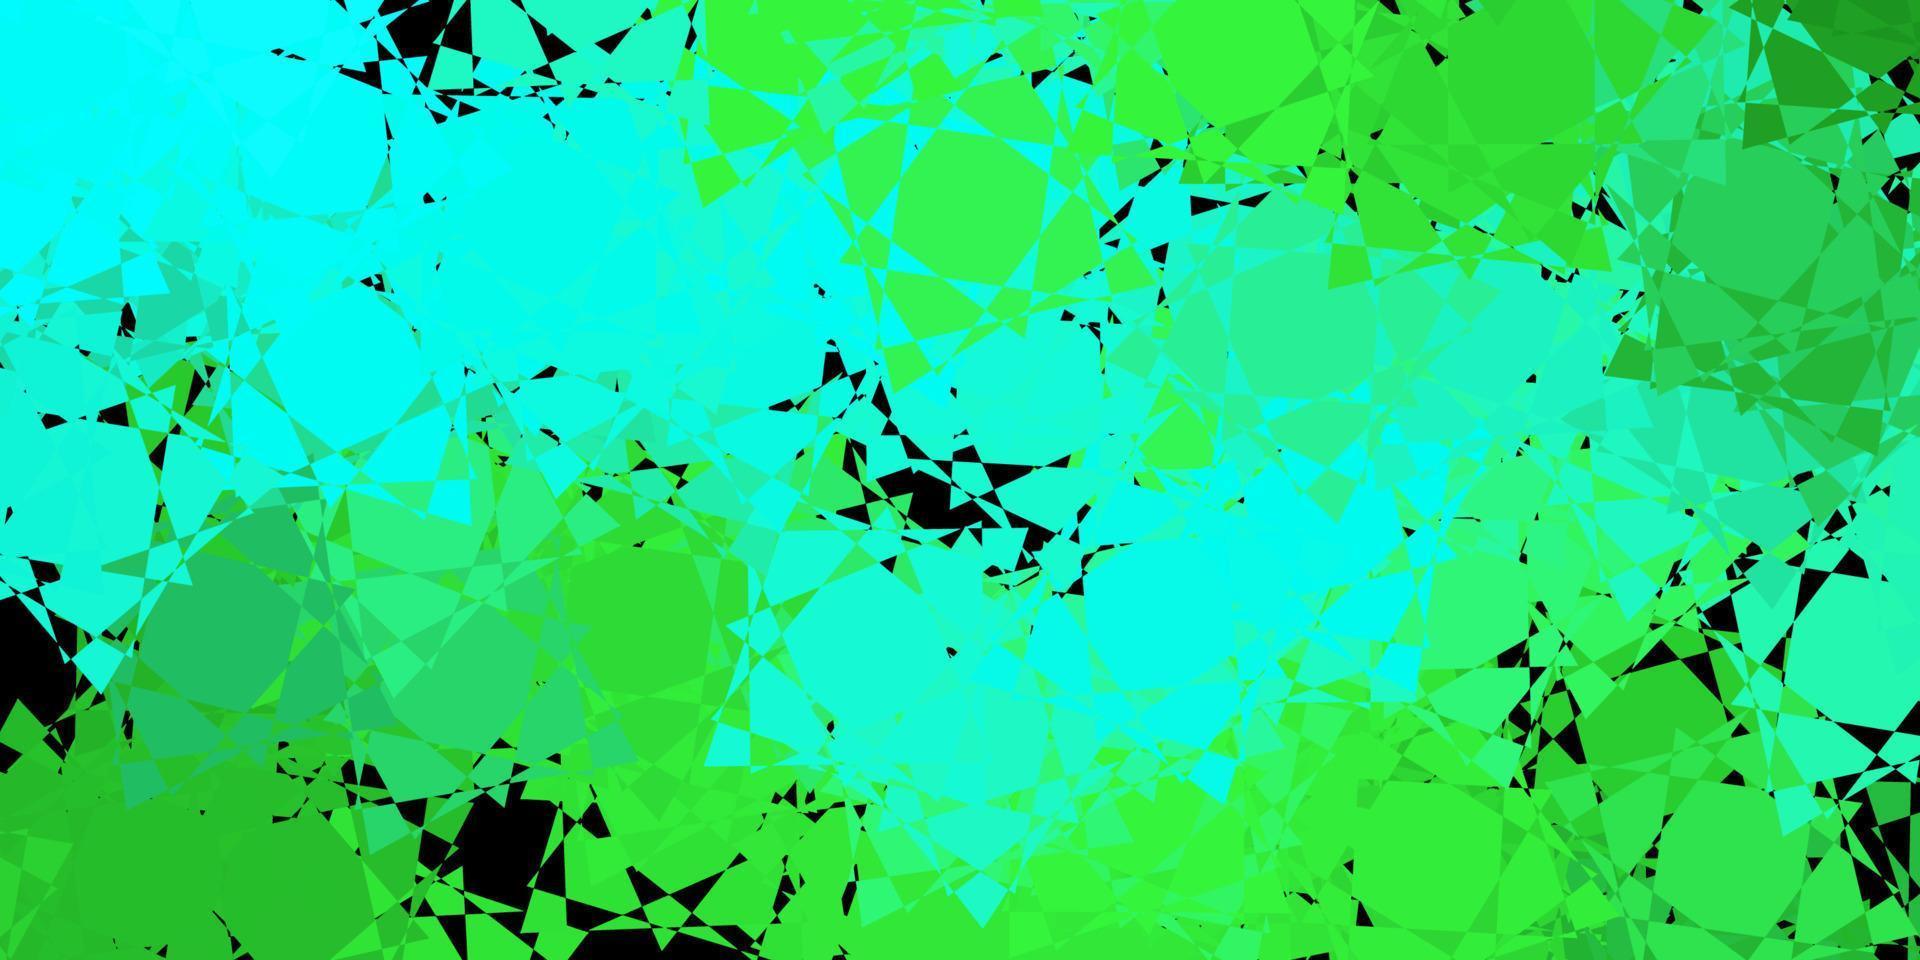 modèle vectoriel vert foncé avec des formes polygonales.